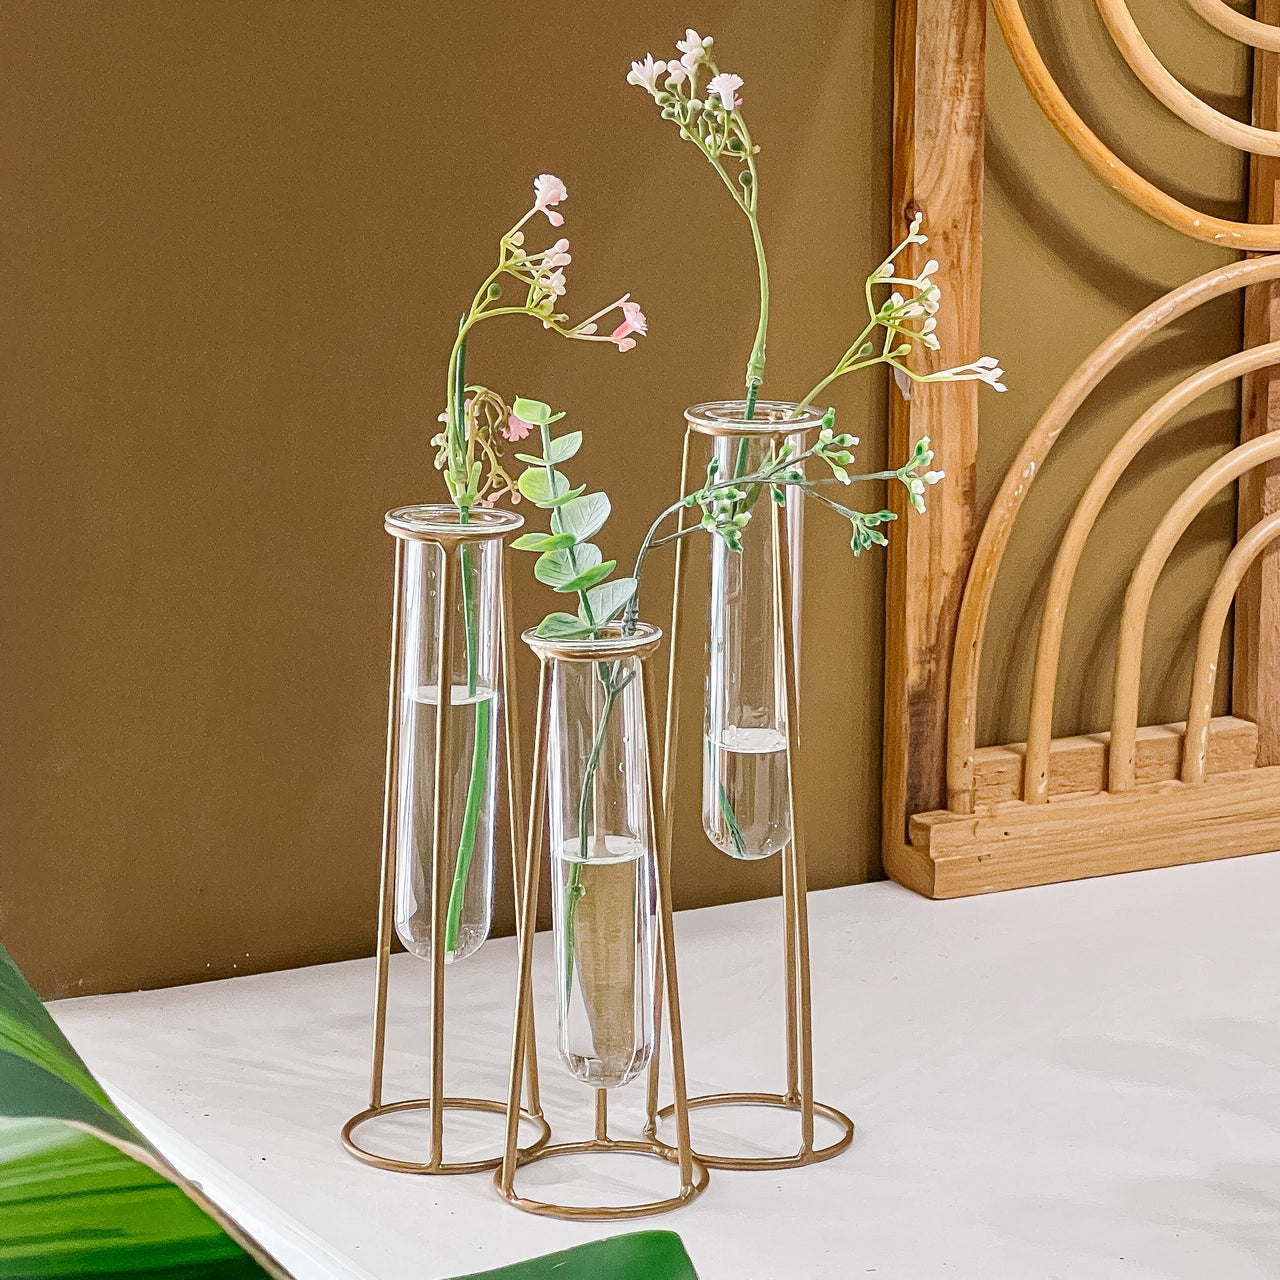 Test Tube Flower Vase - Alternate Image 4 | My Wedding Favors